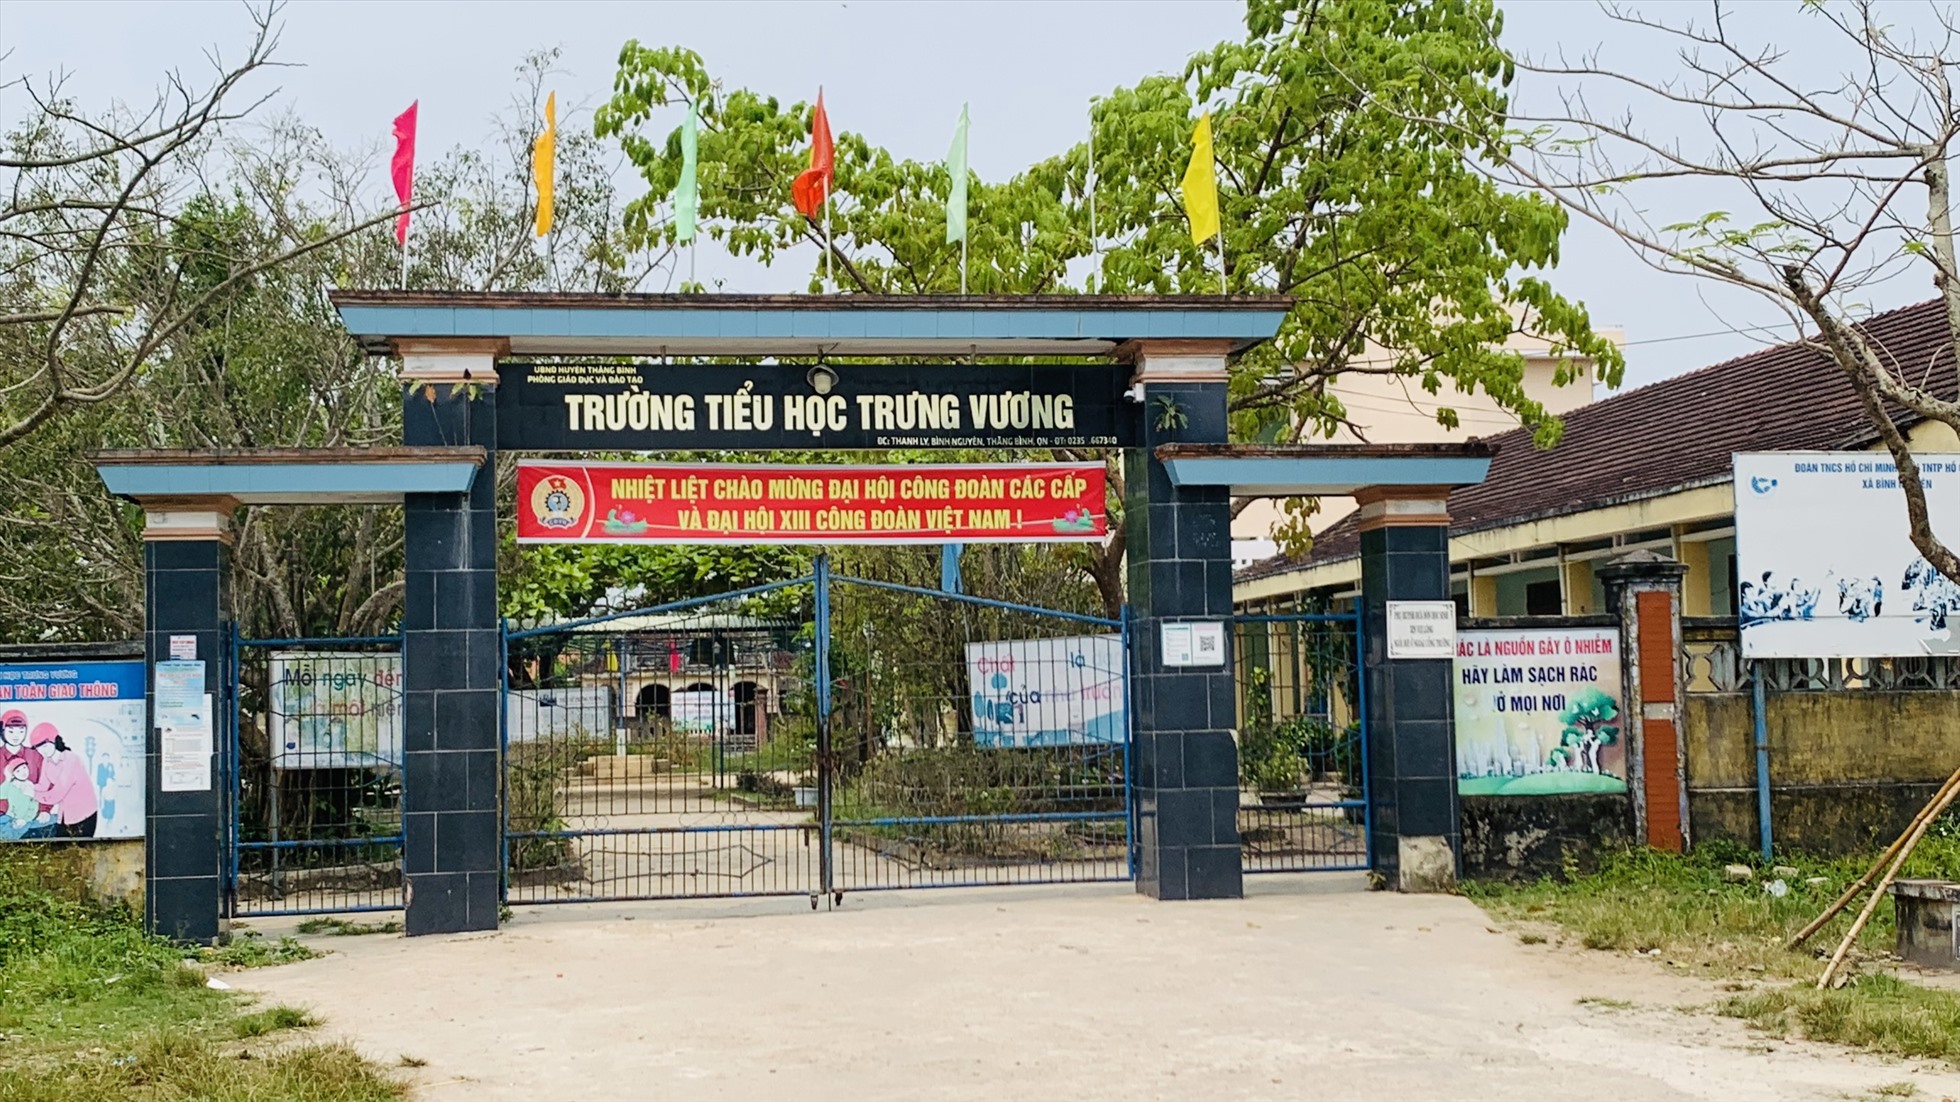 Trường Tiểu học Trưng Vương, xã Bình Nguyên, huyện Thăng Bình, Quảng Nam. Ảnh Hoàng Bin